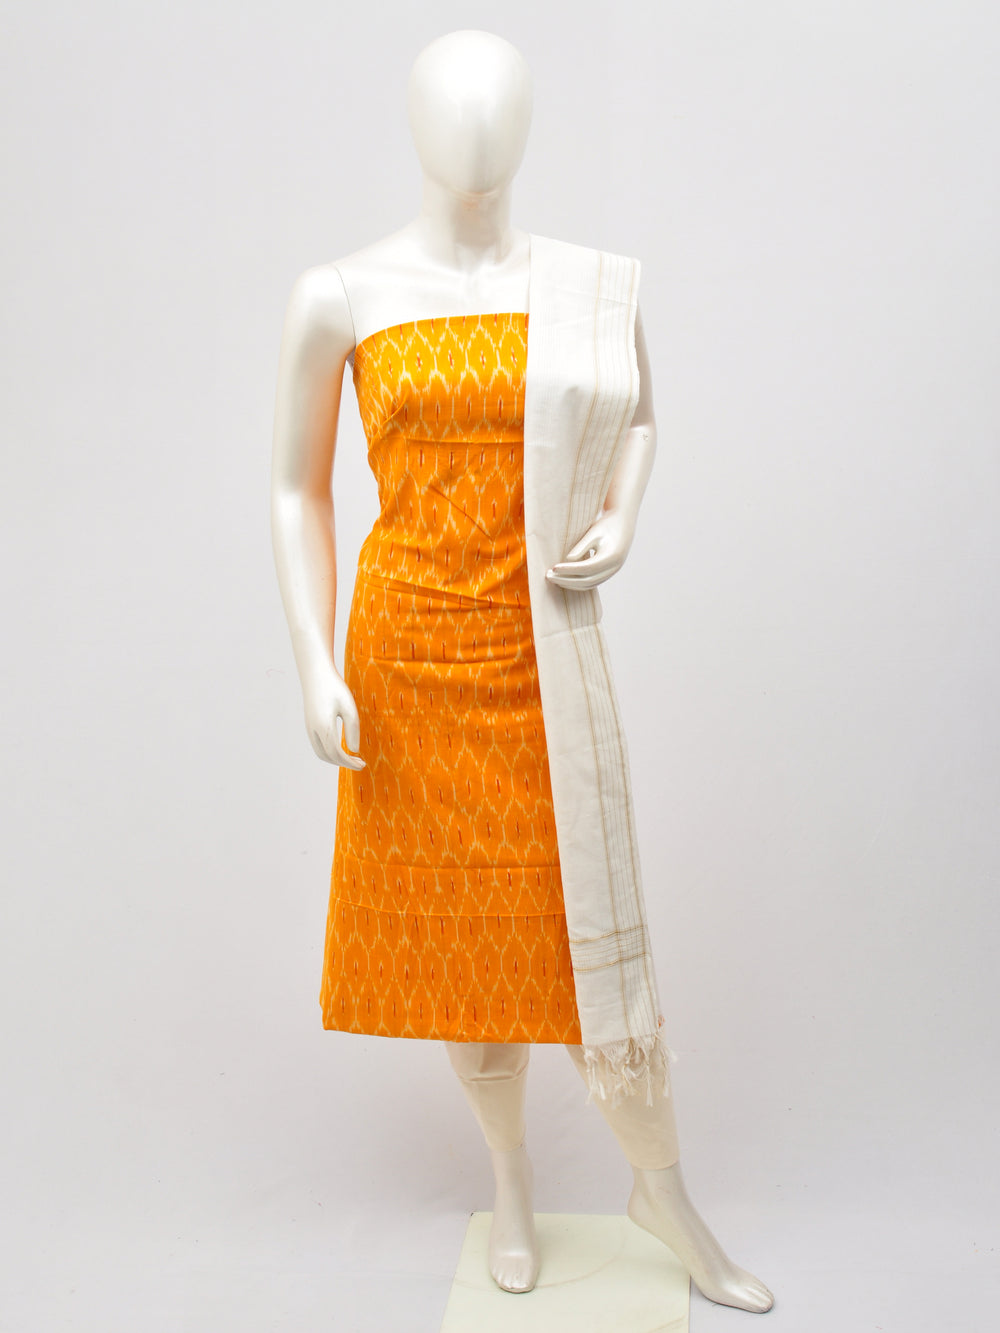 Cotton Woven Designer Dress Material [D61207043]